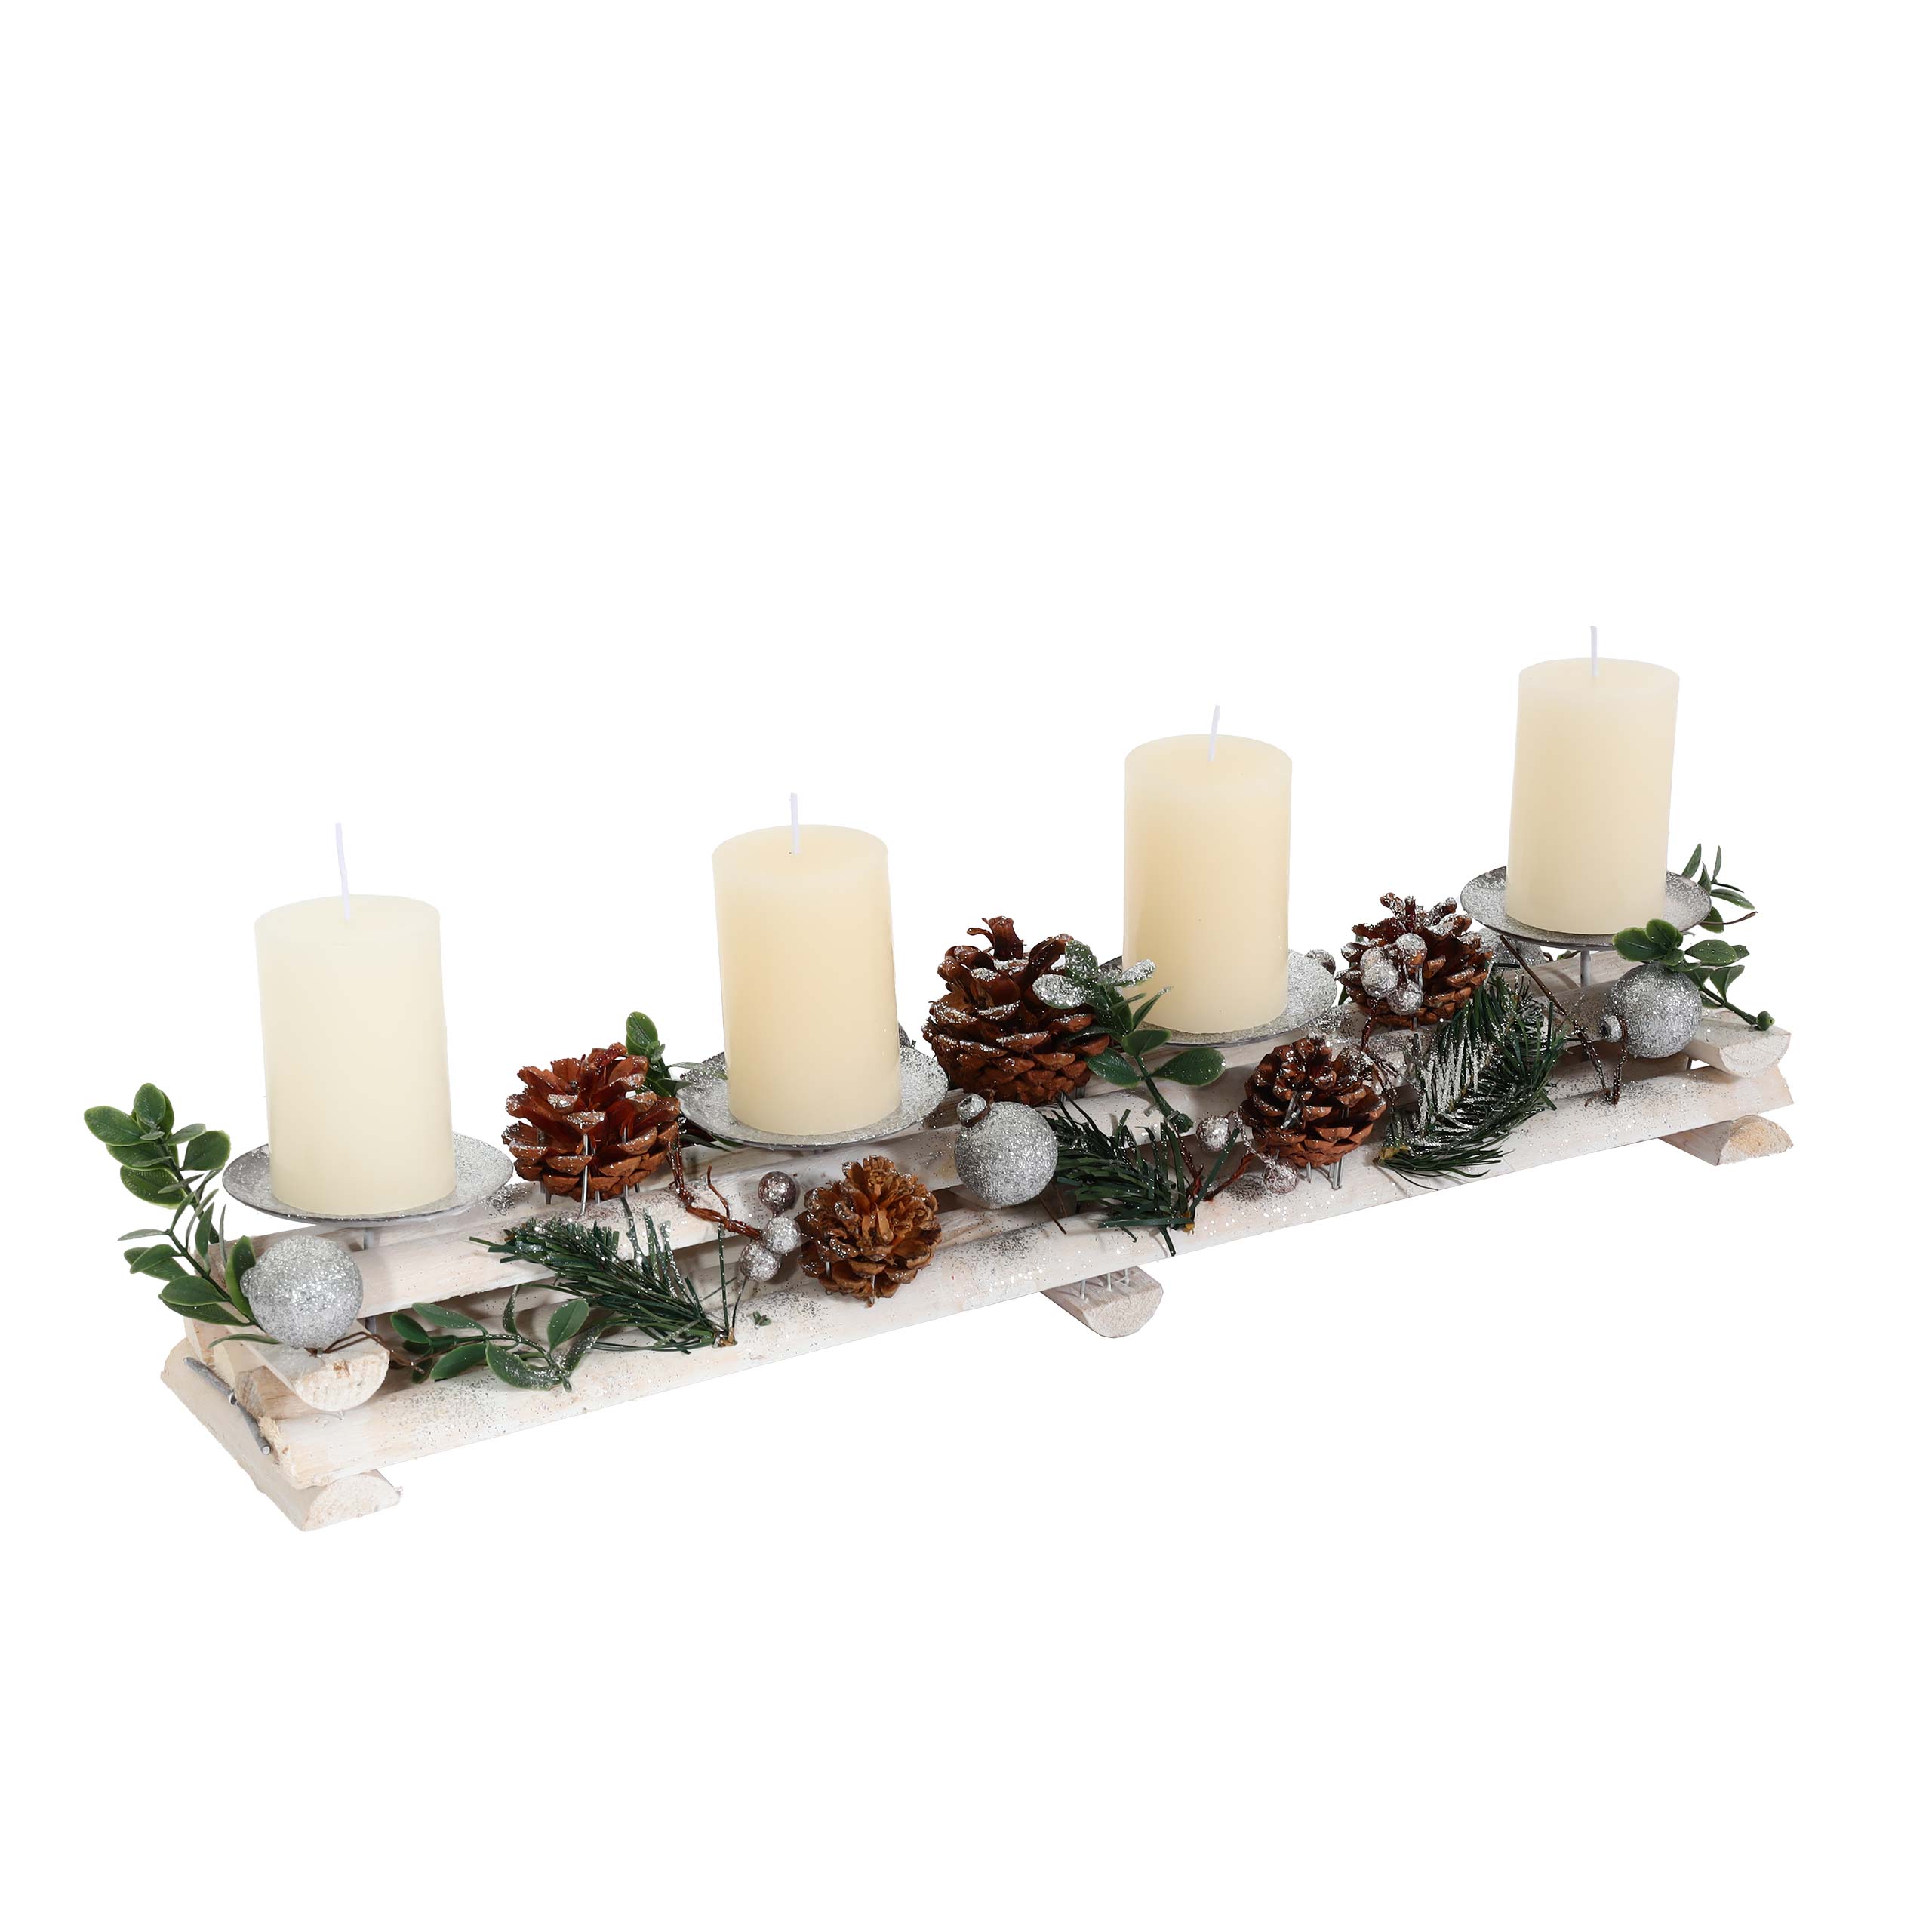 Adventsgesteck MCW-M12 silber Weihnachtsdeko mit mit Adventskranz Holz weiß 18x49x13cm Kerzenhaltern, Kerzen